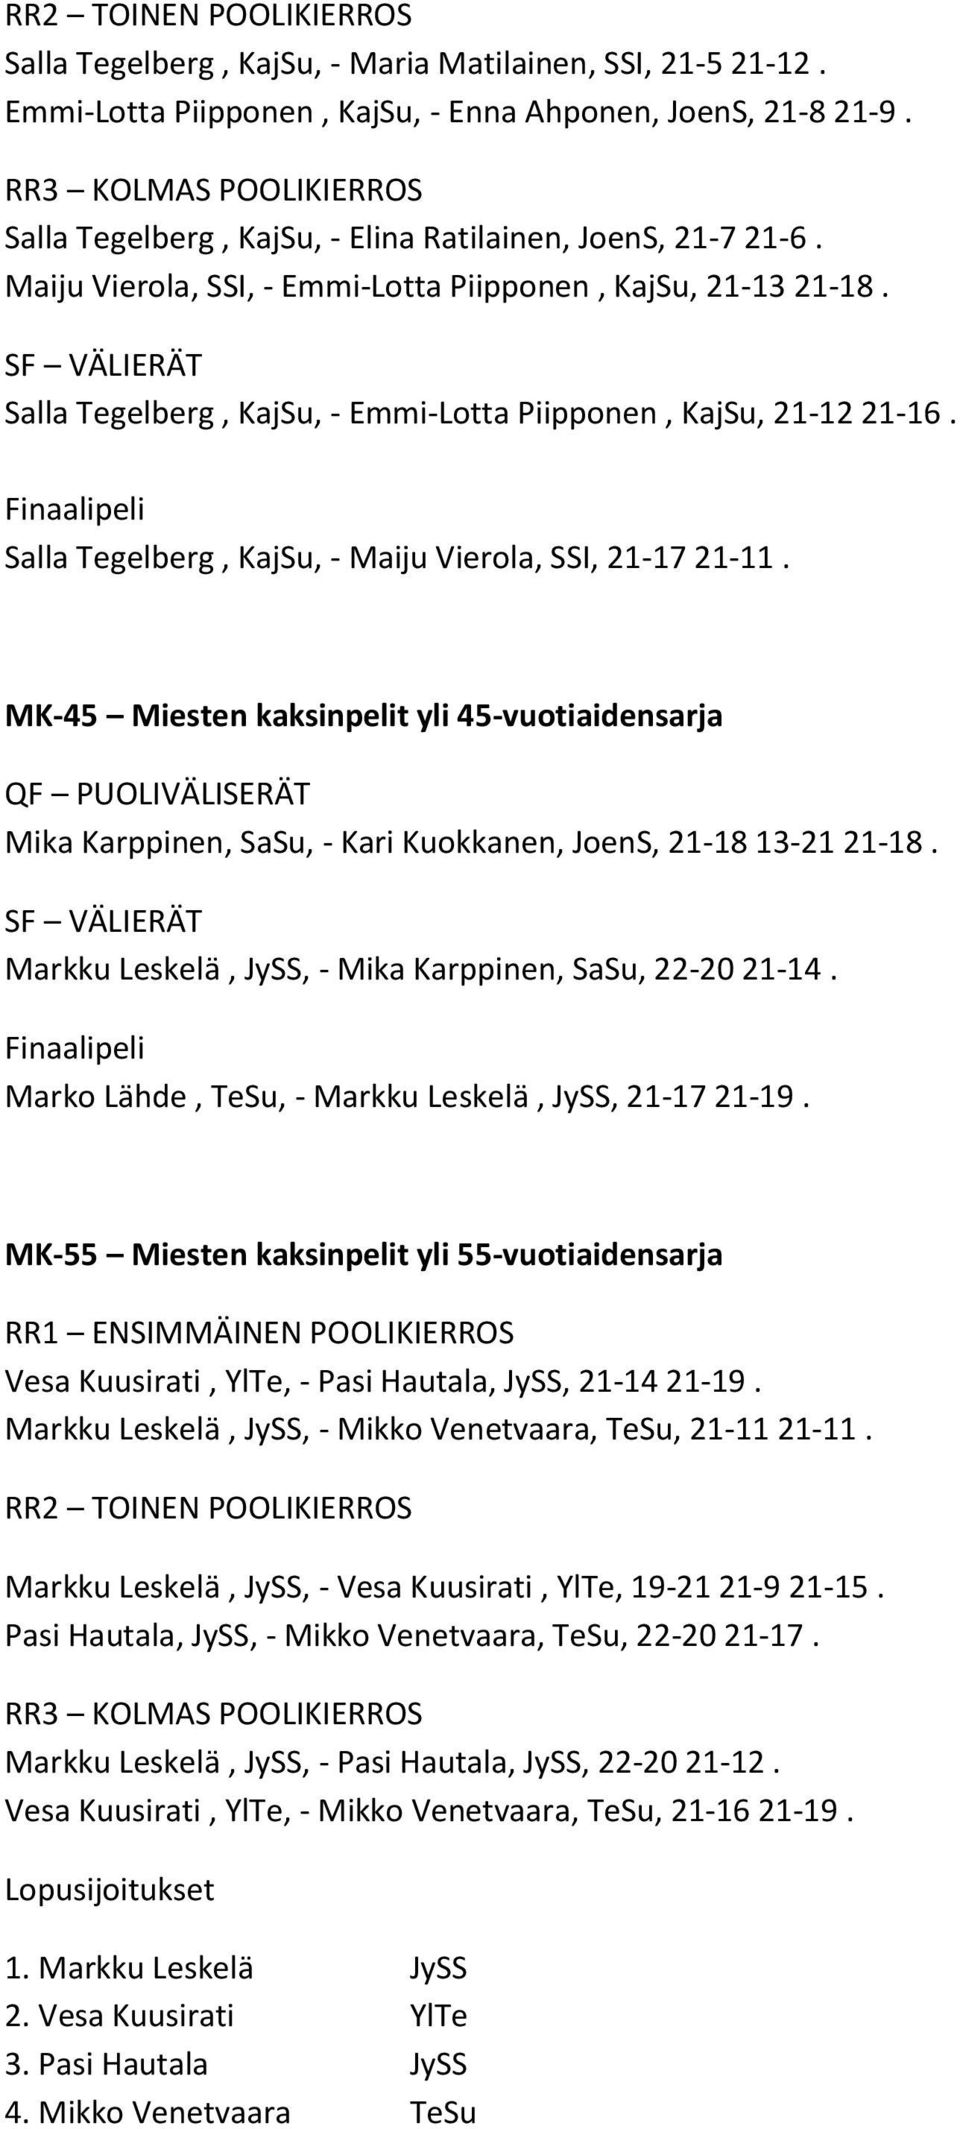 MK-45 Miesten kaksinpelit yli 45-vuotiaidensarja Mika Karppinen, SaSu, - Kari Kuokkanen, JoenS, 21-18 13-21 21-18. Markku Leskelä, JySS, - Mika Karppinen, SaSu, 22-20 21-14.